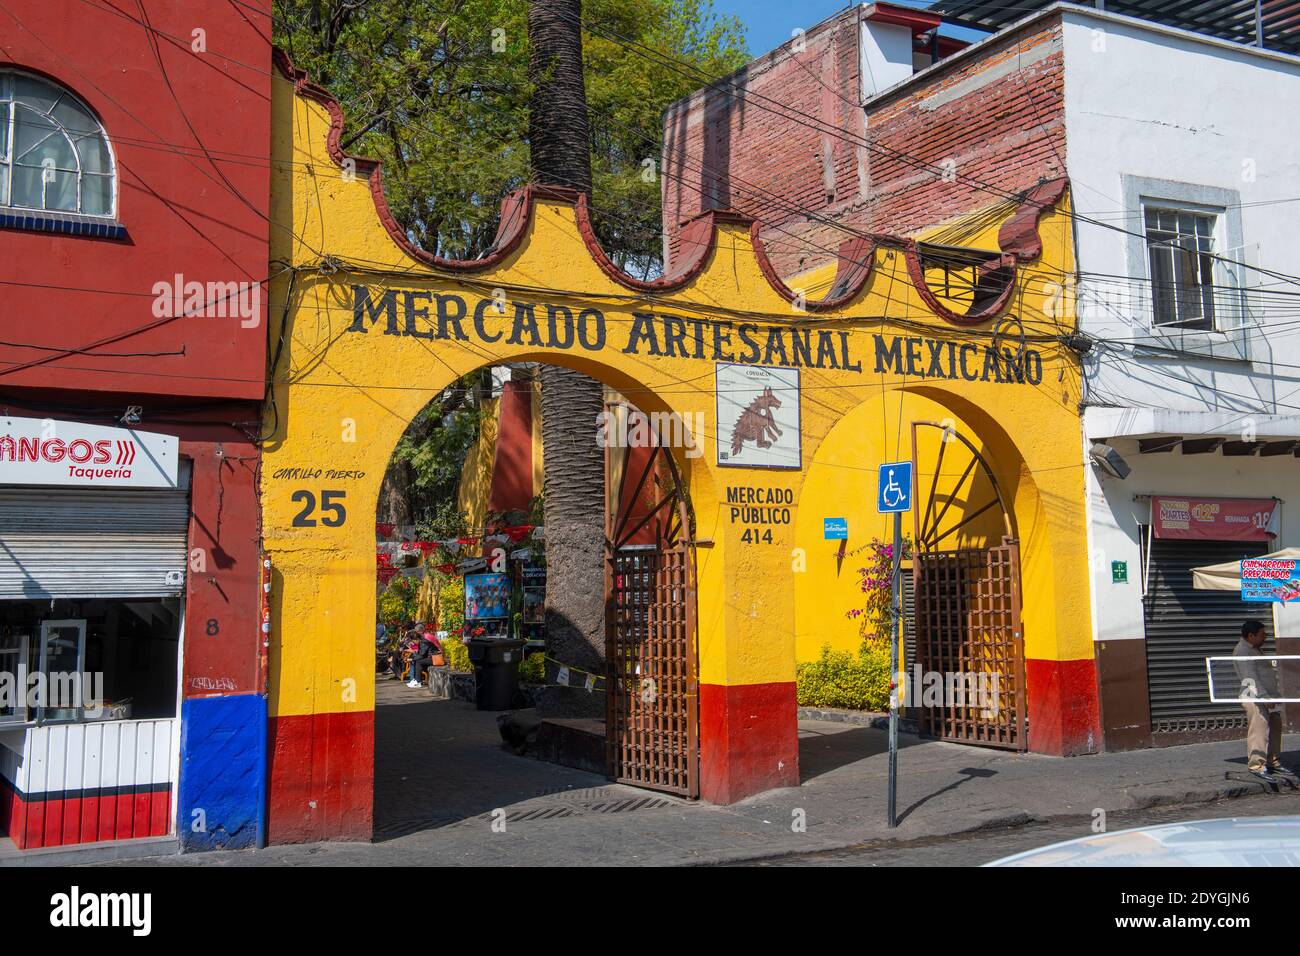 Imagen de Mercado Artesanal Mexicano Coyoacan